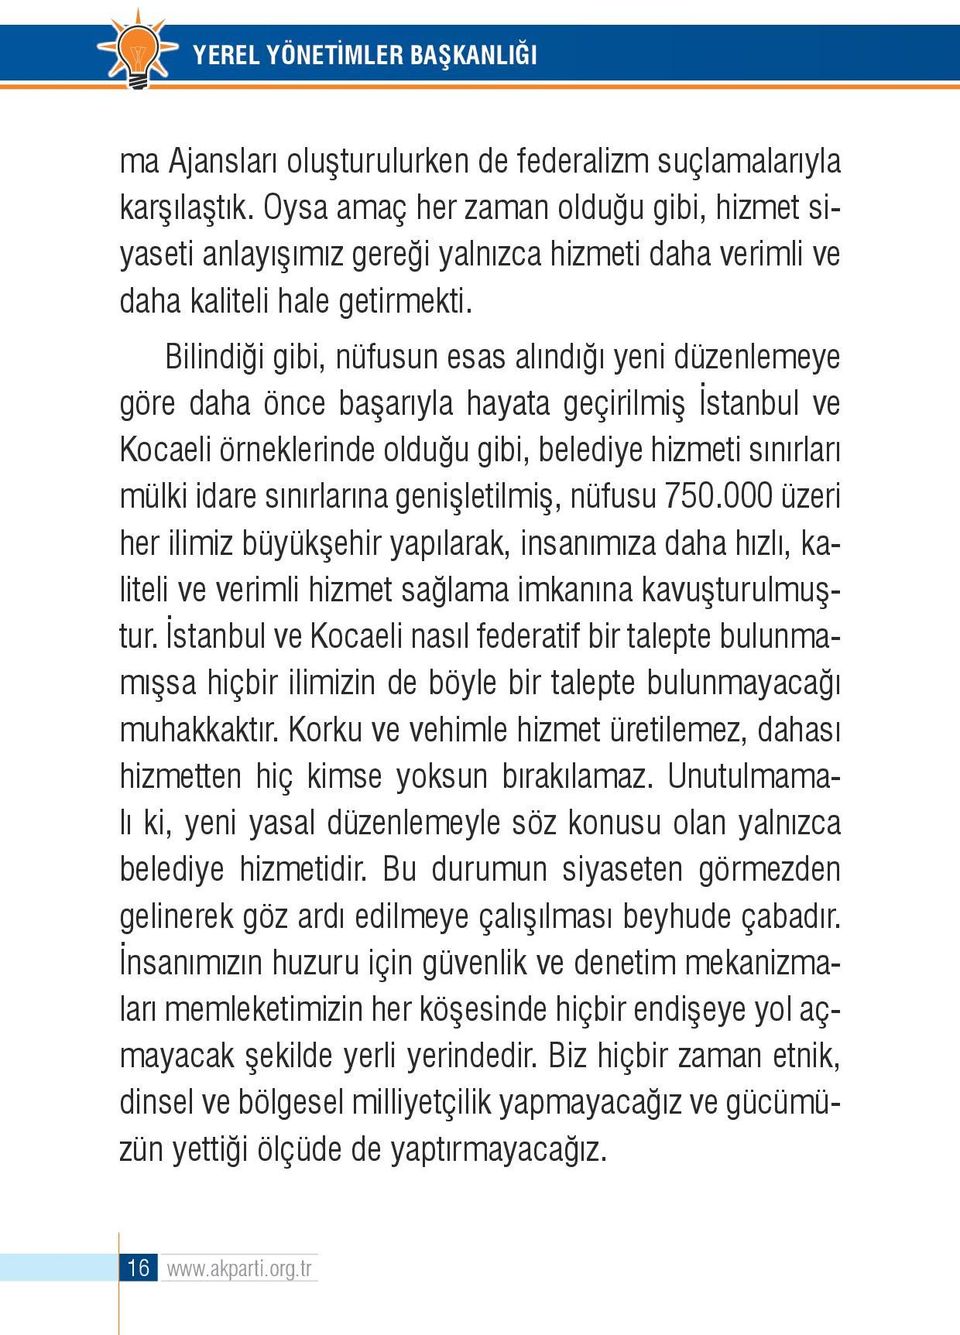 Bilindiği gibi, nüfusun esas alındığı yeni düzenlemeye göre daha önce başarıyla hayata geçirilmiş İstanbul ve Kocaeli örneklerinde olduğu gibi, belediye hizmeti sınırları mülki idare sınırlarına